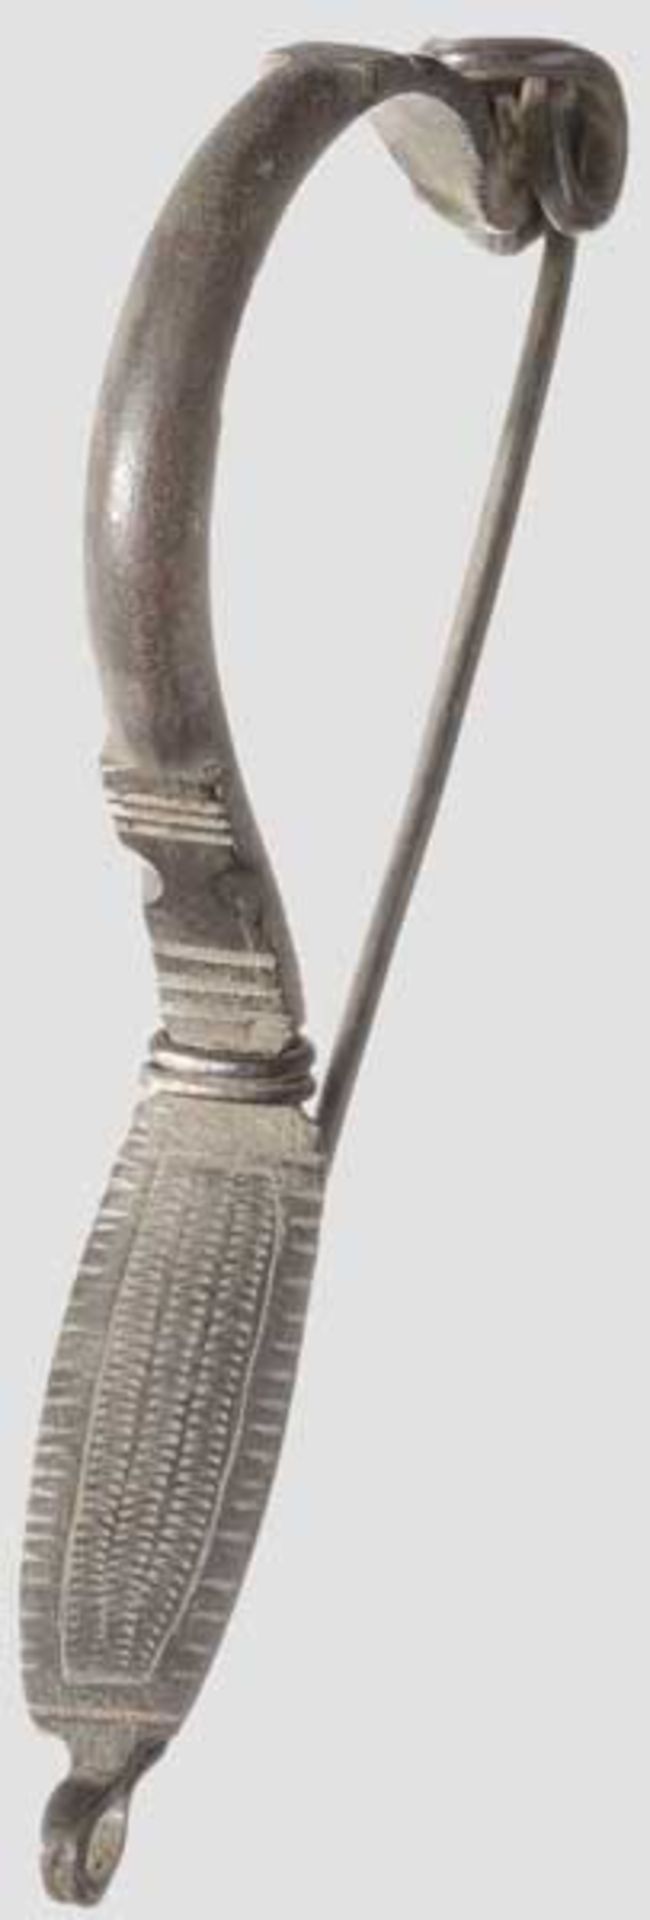 Silberfibel mit umgeschlagenem Fuß, südosteuropäisches Barbarikum, 4. Jhdt. Bandförmiger Bügel, im